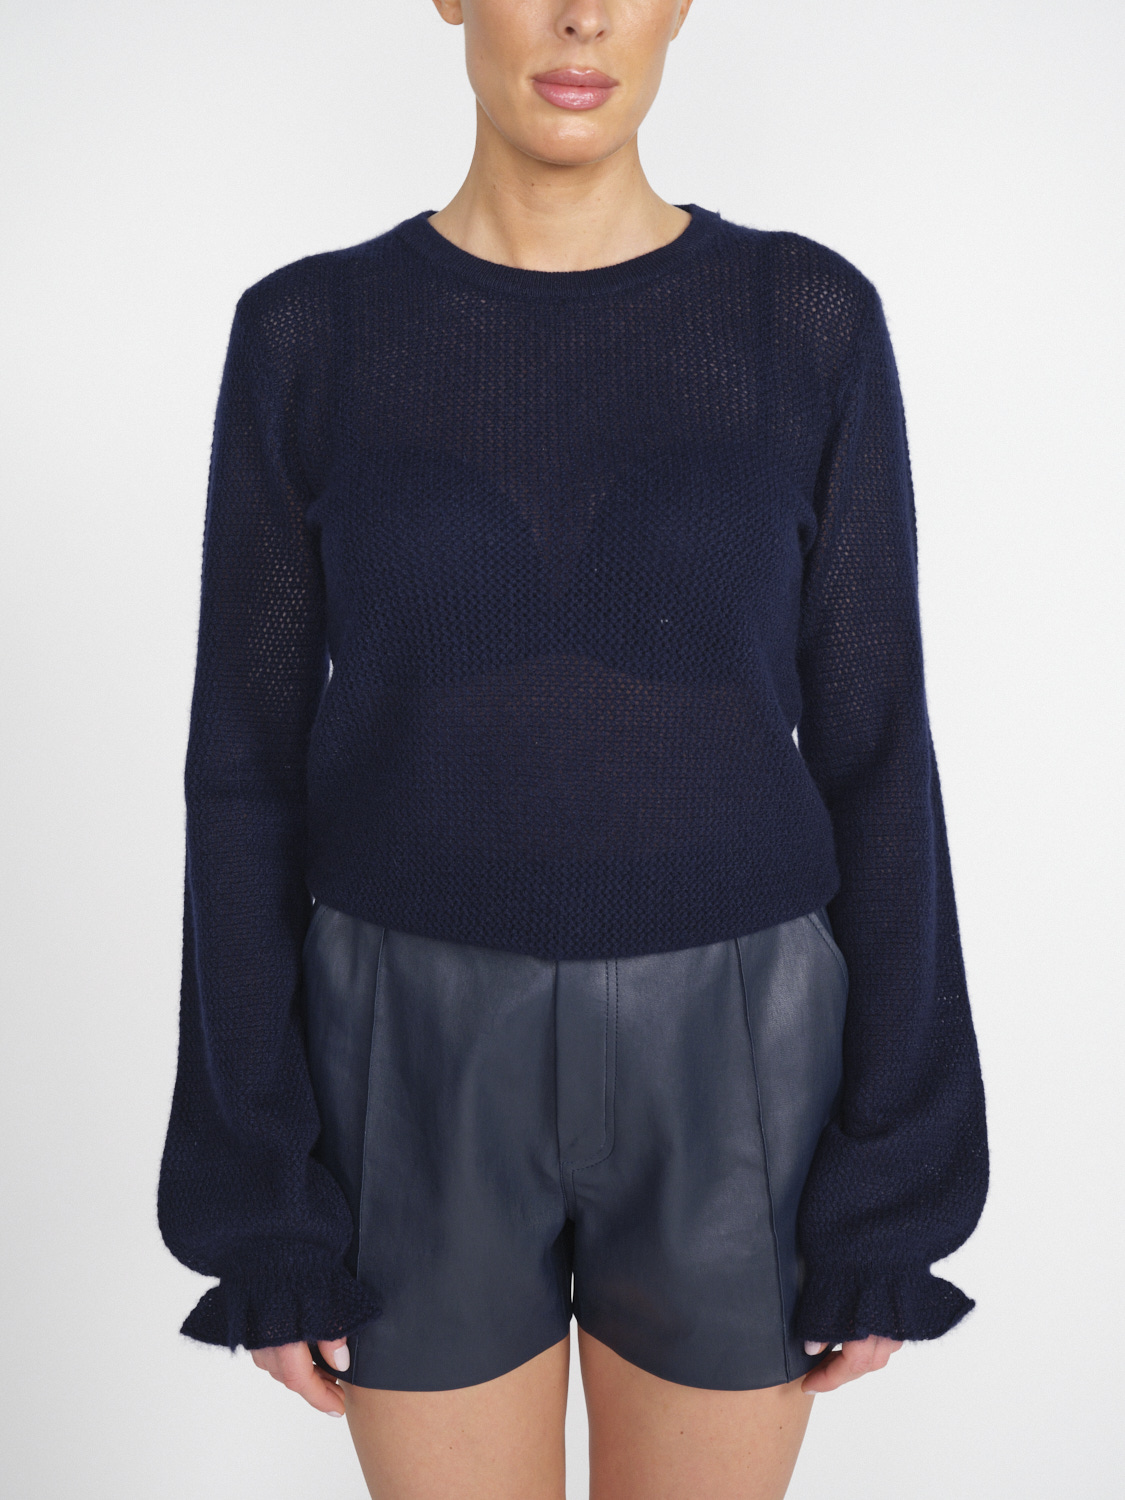 Leanne - Ajour knit cashmere jumper 